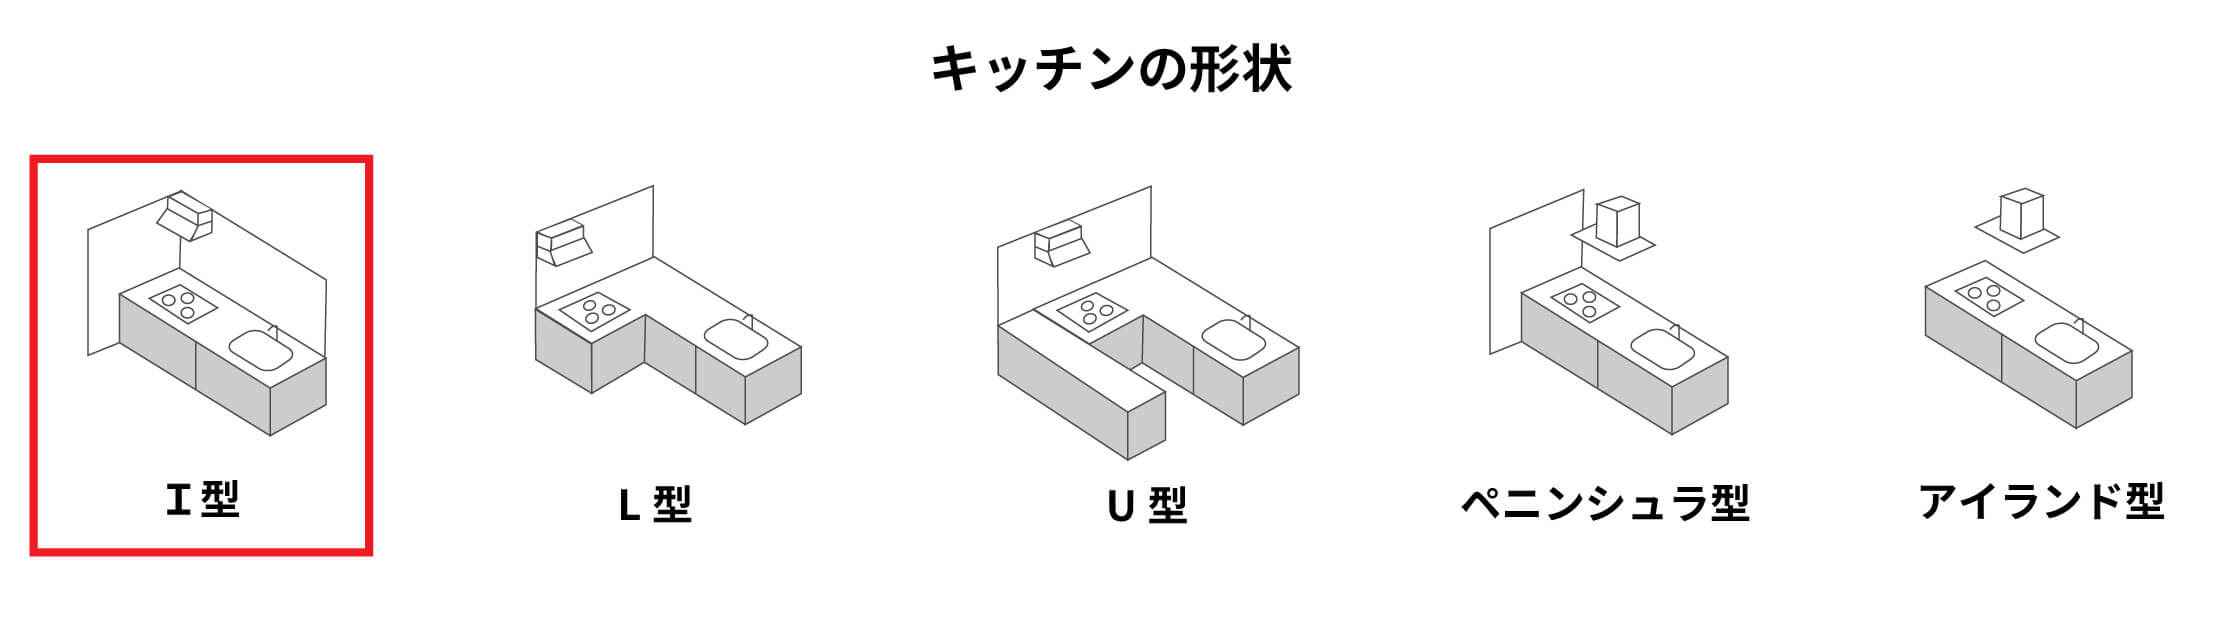 【キッチンの形状】・I型・L型・U型・ペニンシュラ型・アイランド型　5種類の中のI型にマーク